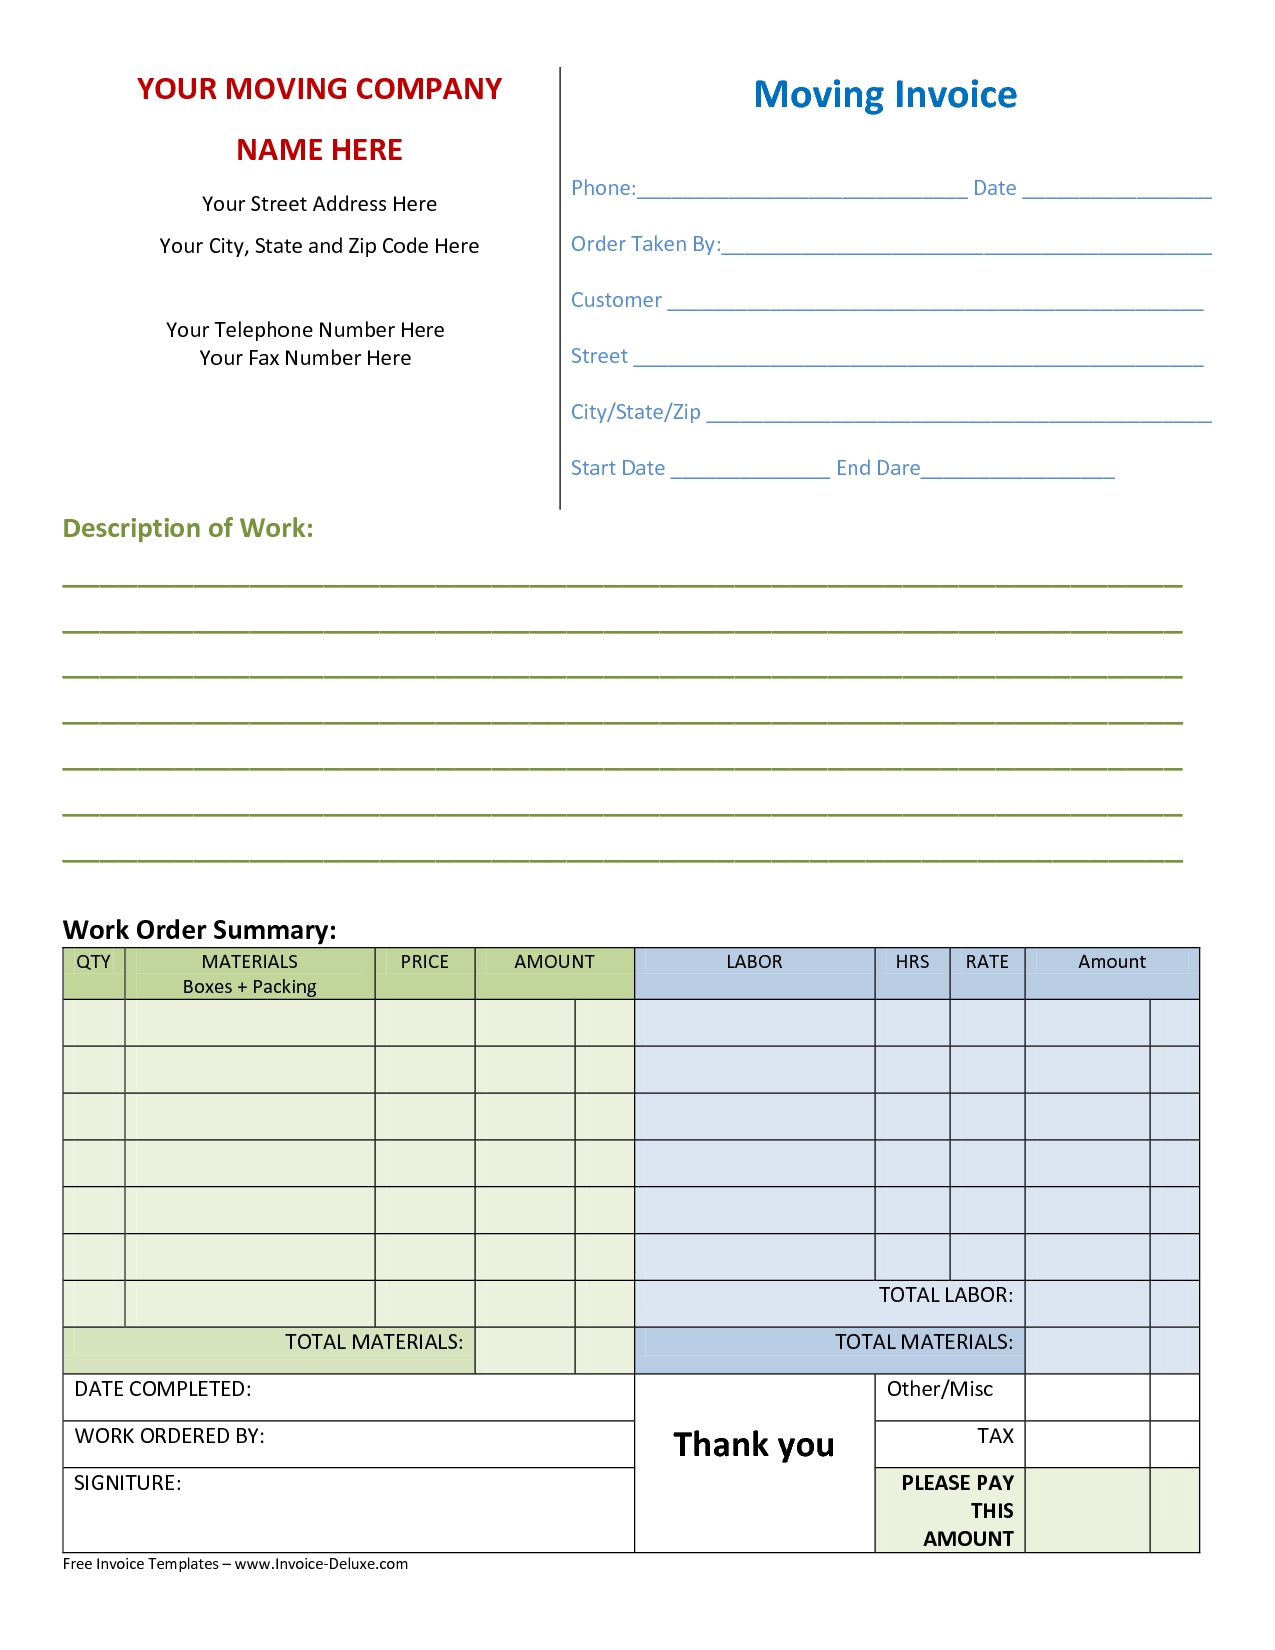 moving company invoice templates company invoice template invoice company invoice forms